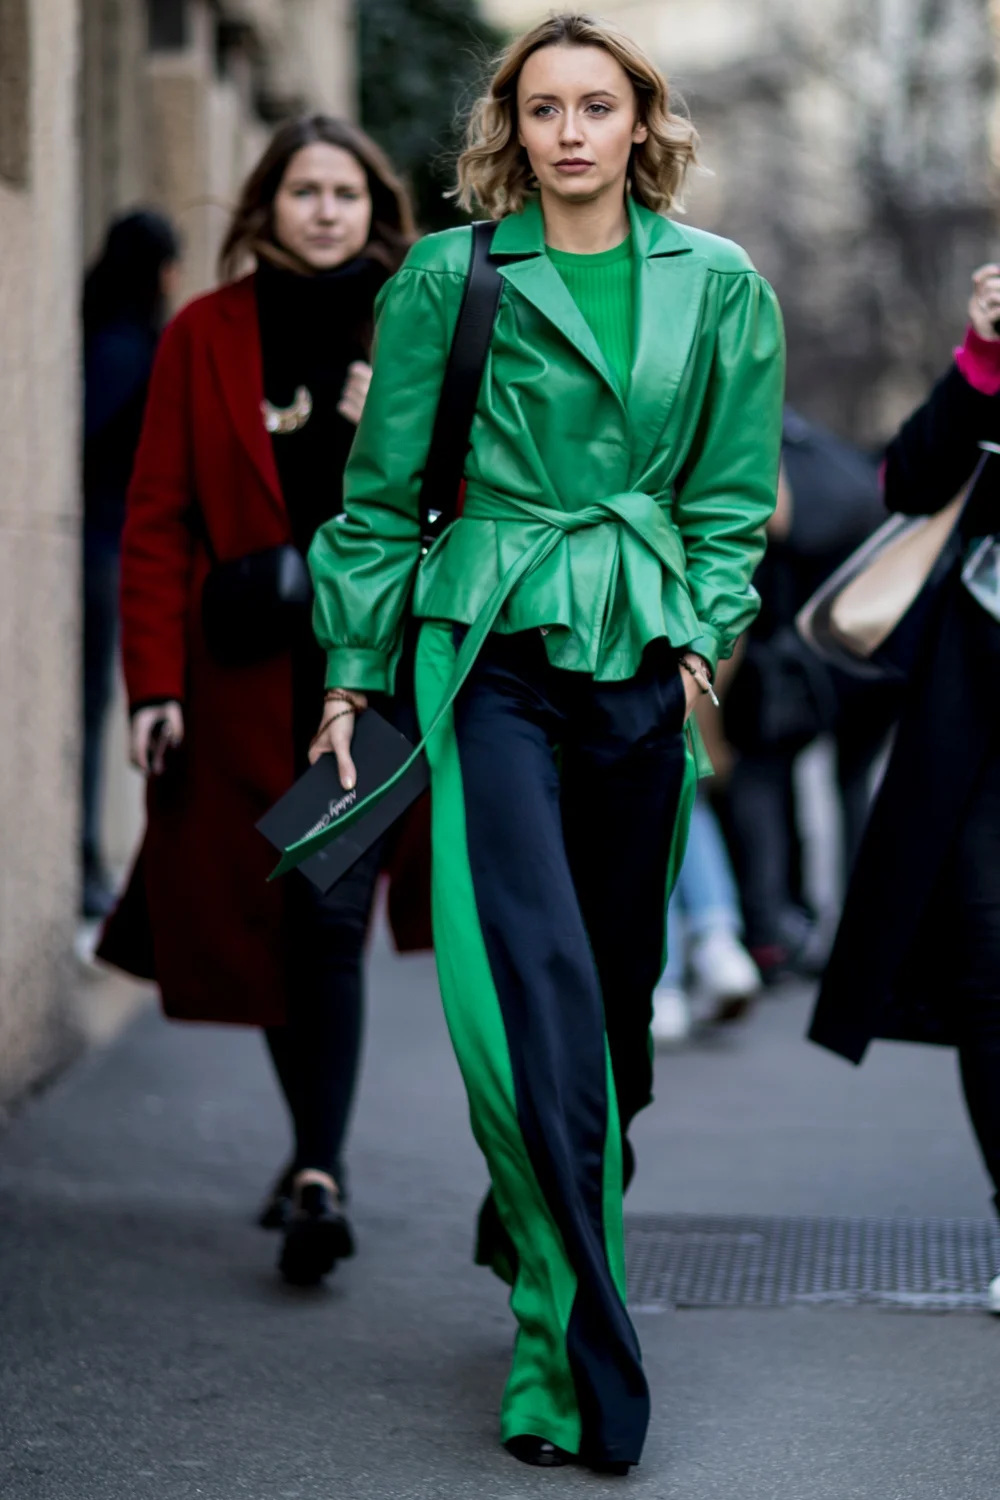 Милан в тренде: как одеваются звезды street style на модные показы - фото 371406